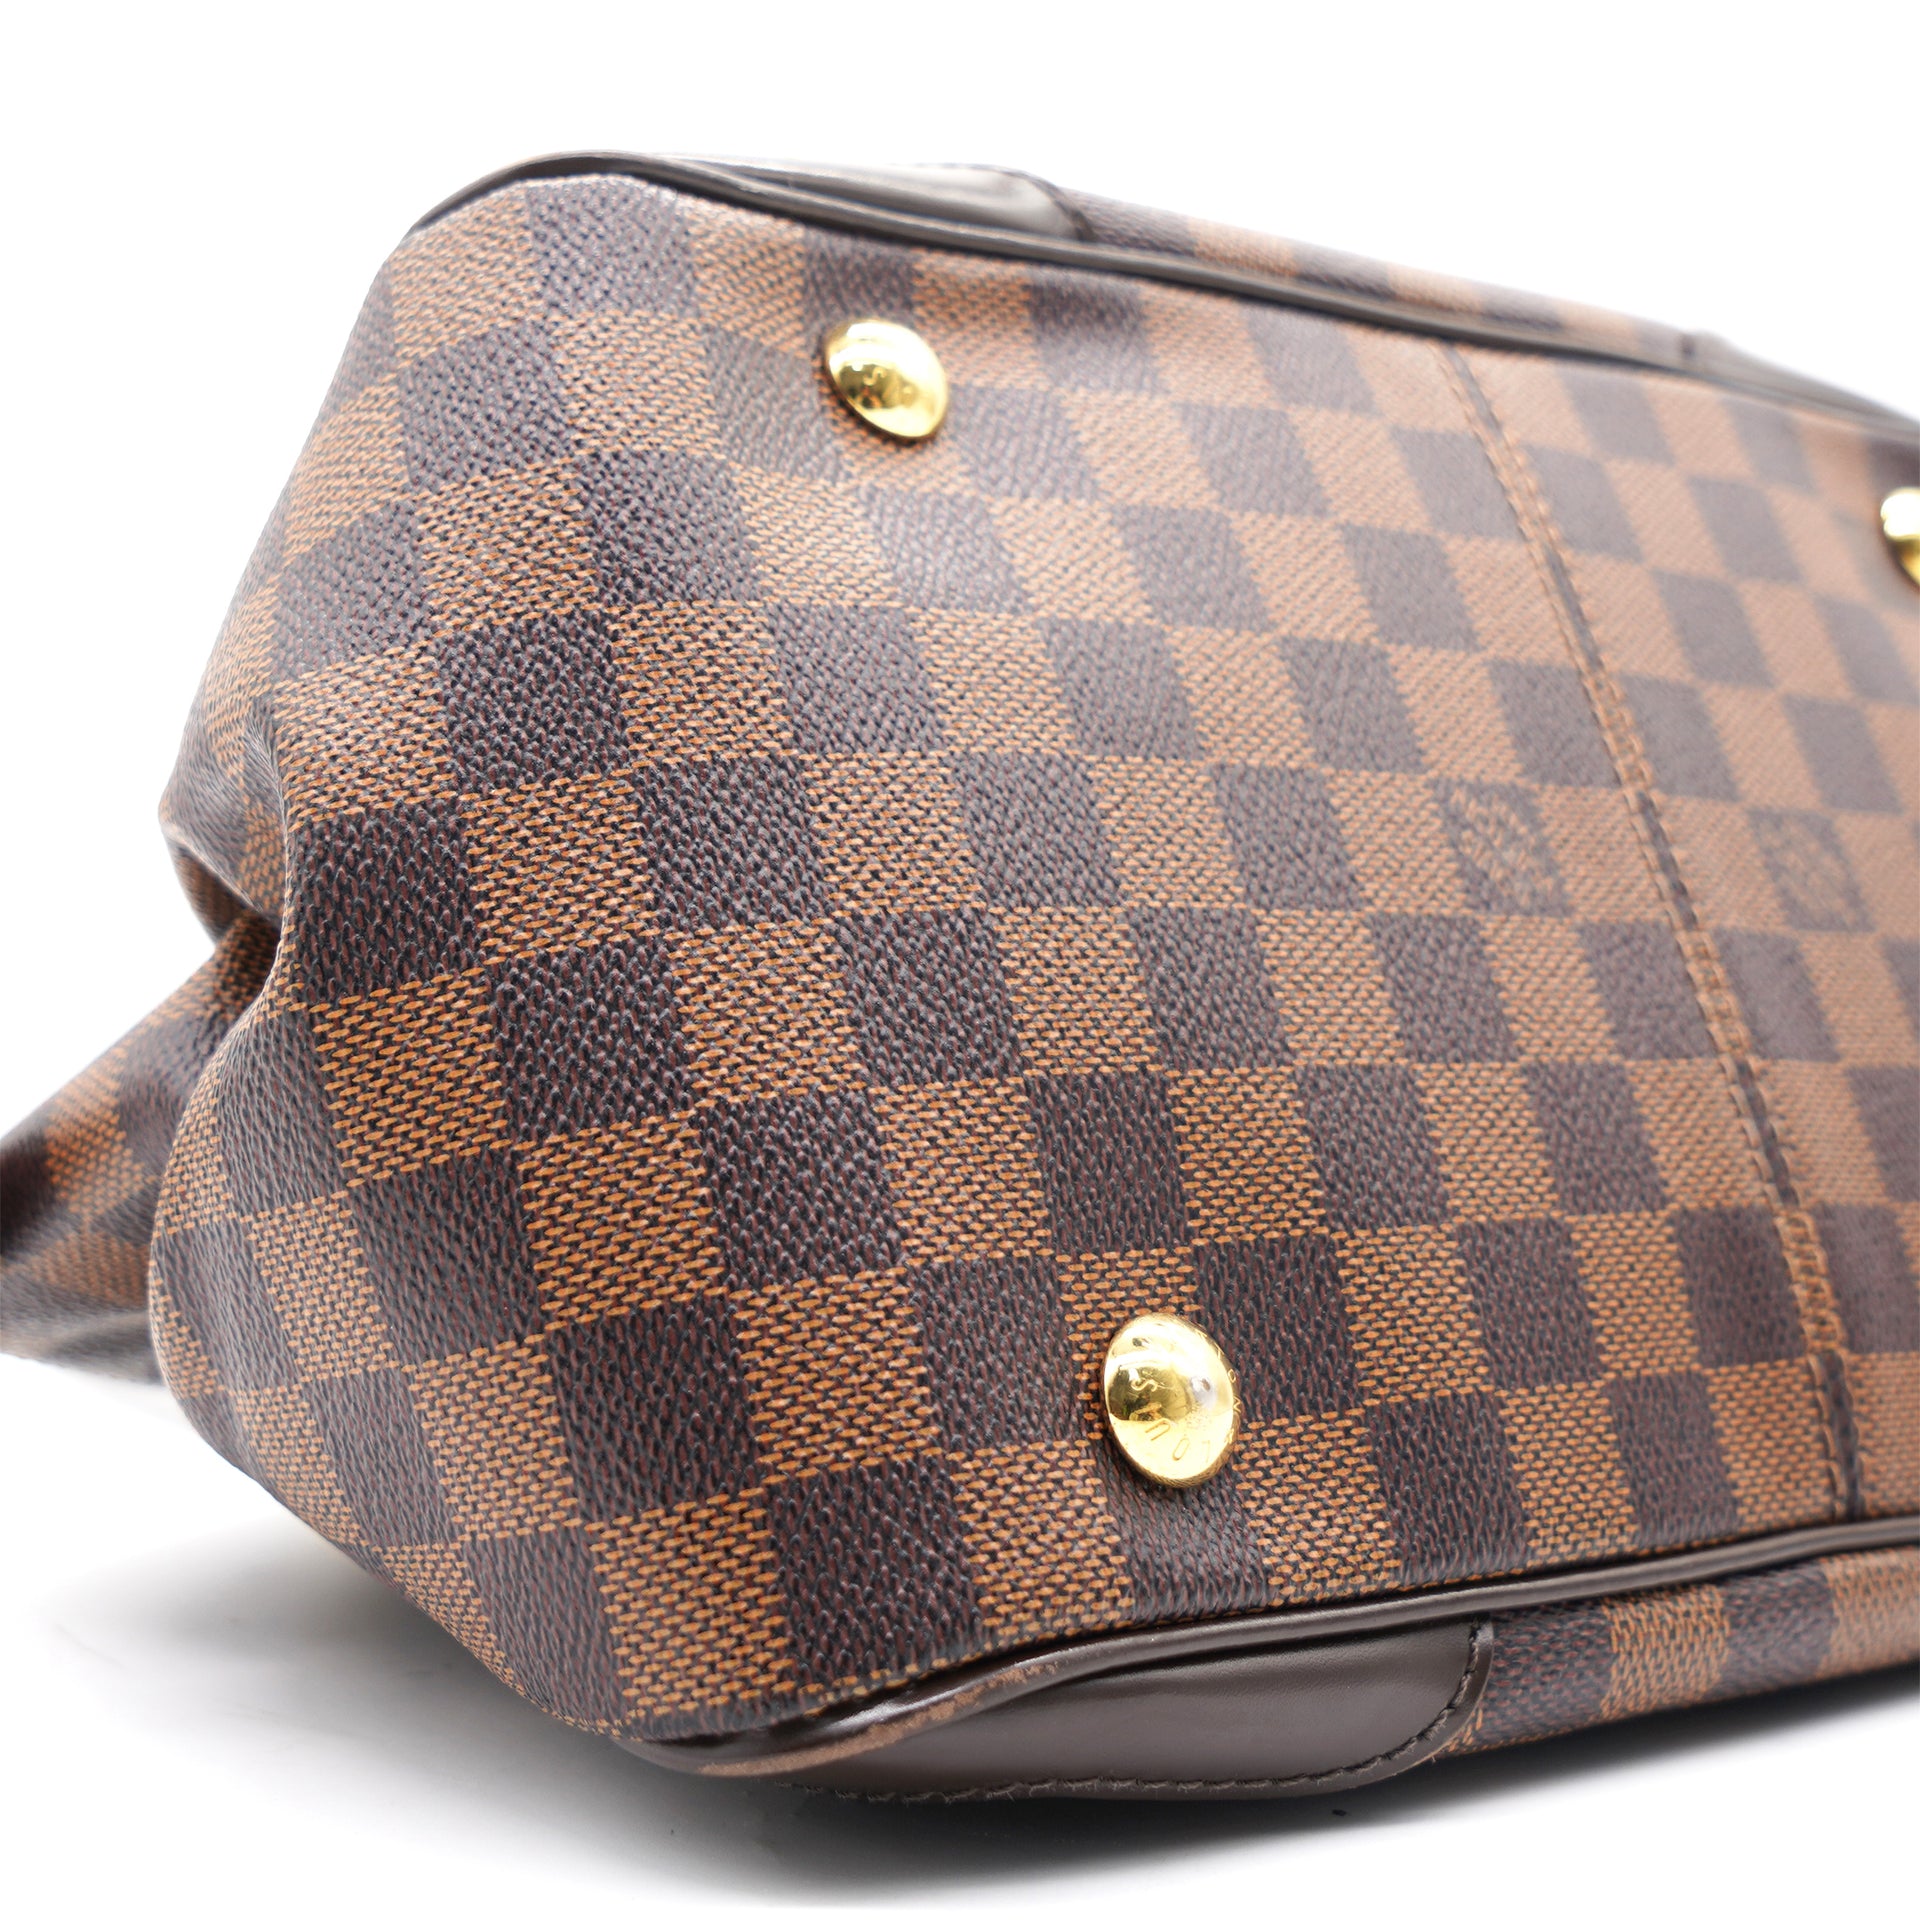 Louis Vuitton Verona PM Damier Ebene Canvas Shoulder Bag on SALE